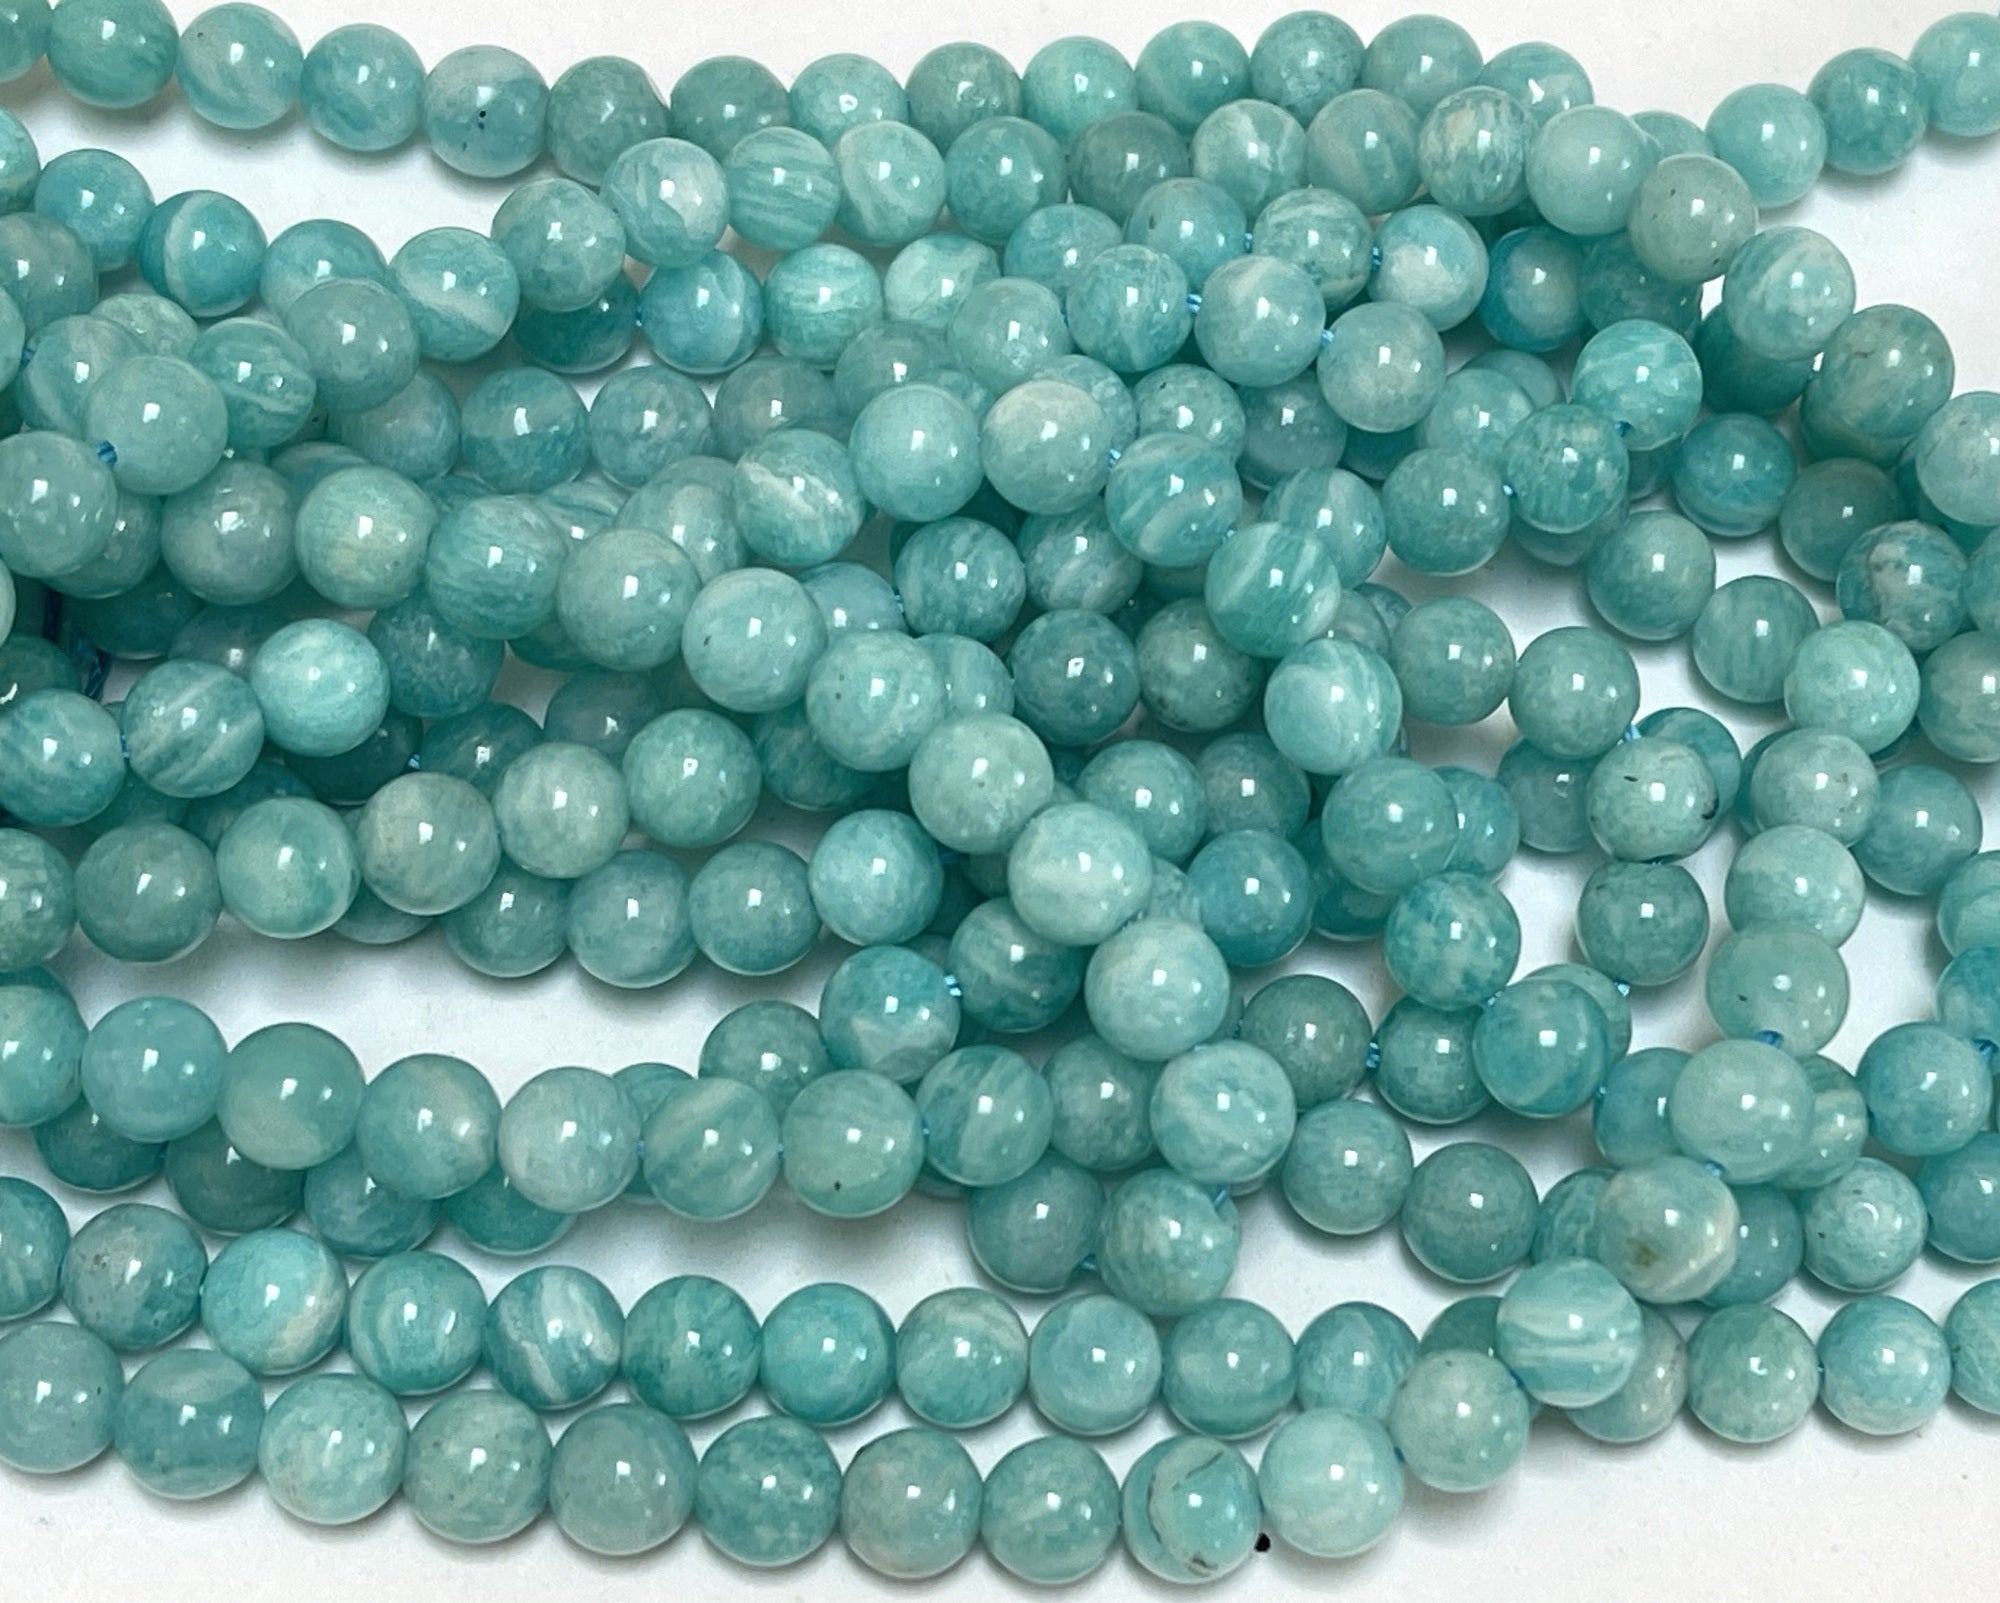 Russian Amazonite 6mm round natural gemstone beads 15.5" strand